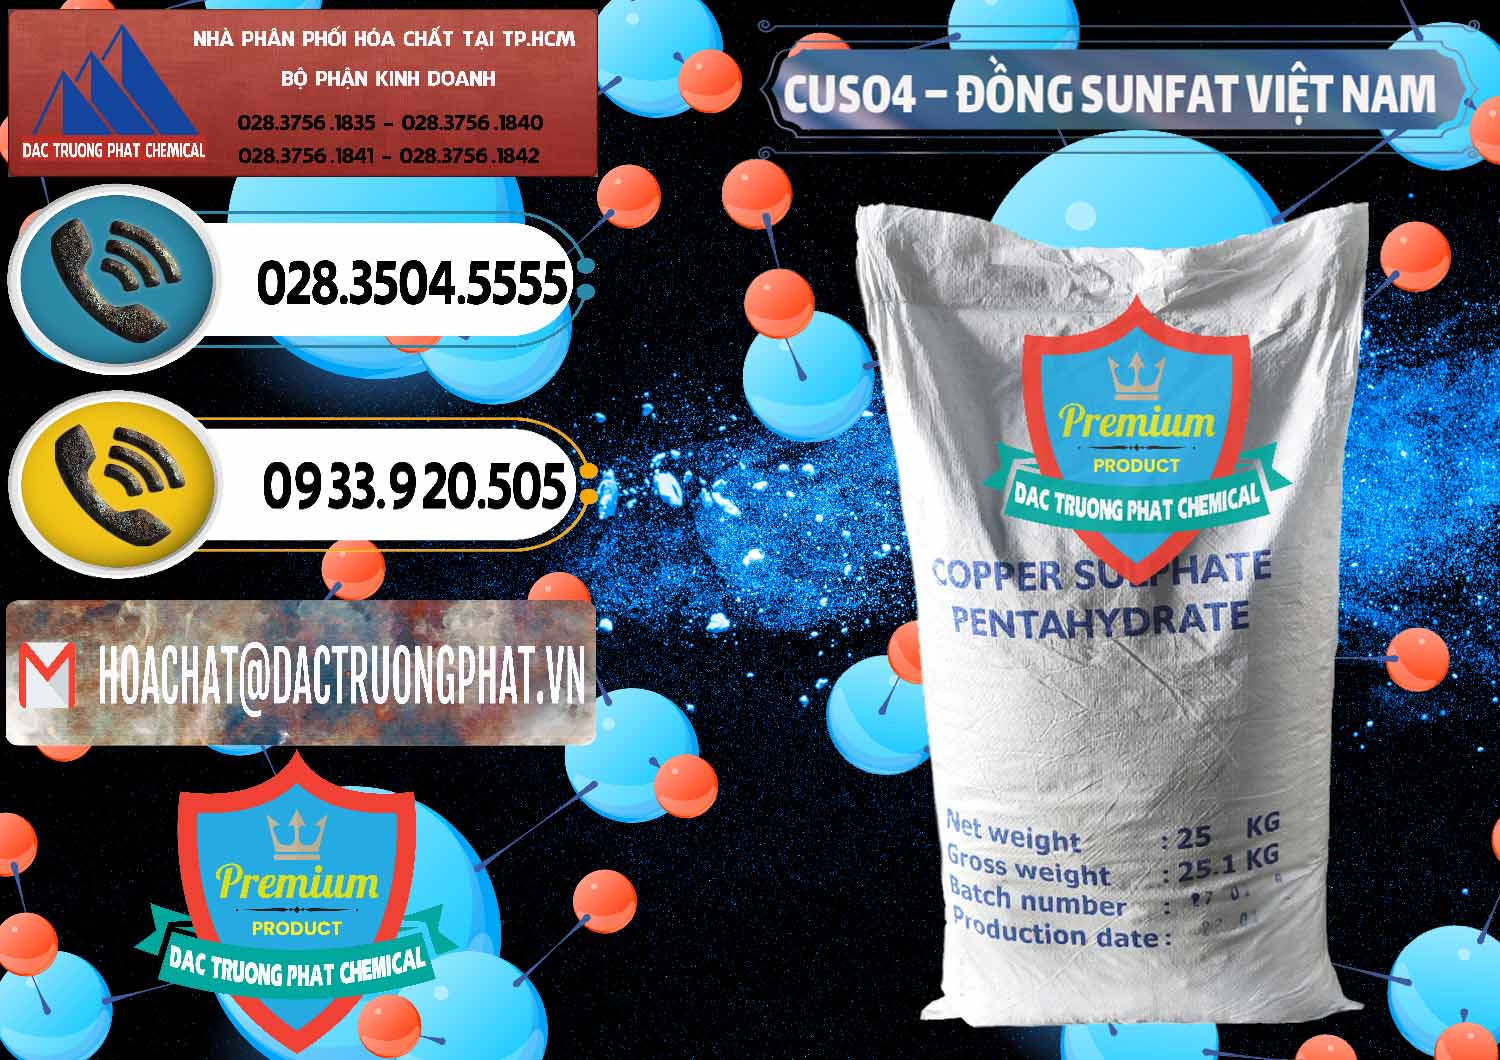 Công ty cung ứng ( bán ) CuSO4 – Đồng Sunfat Dạng Bột Việt Nam - 0196 - Đơn vị kinh doanh ( cung cấp ) hóa chất tại TP.HCM - hoachatdetnhuom.vn